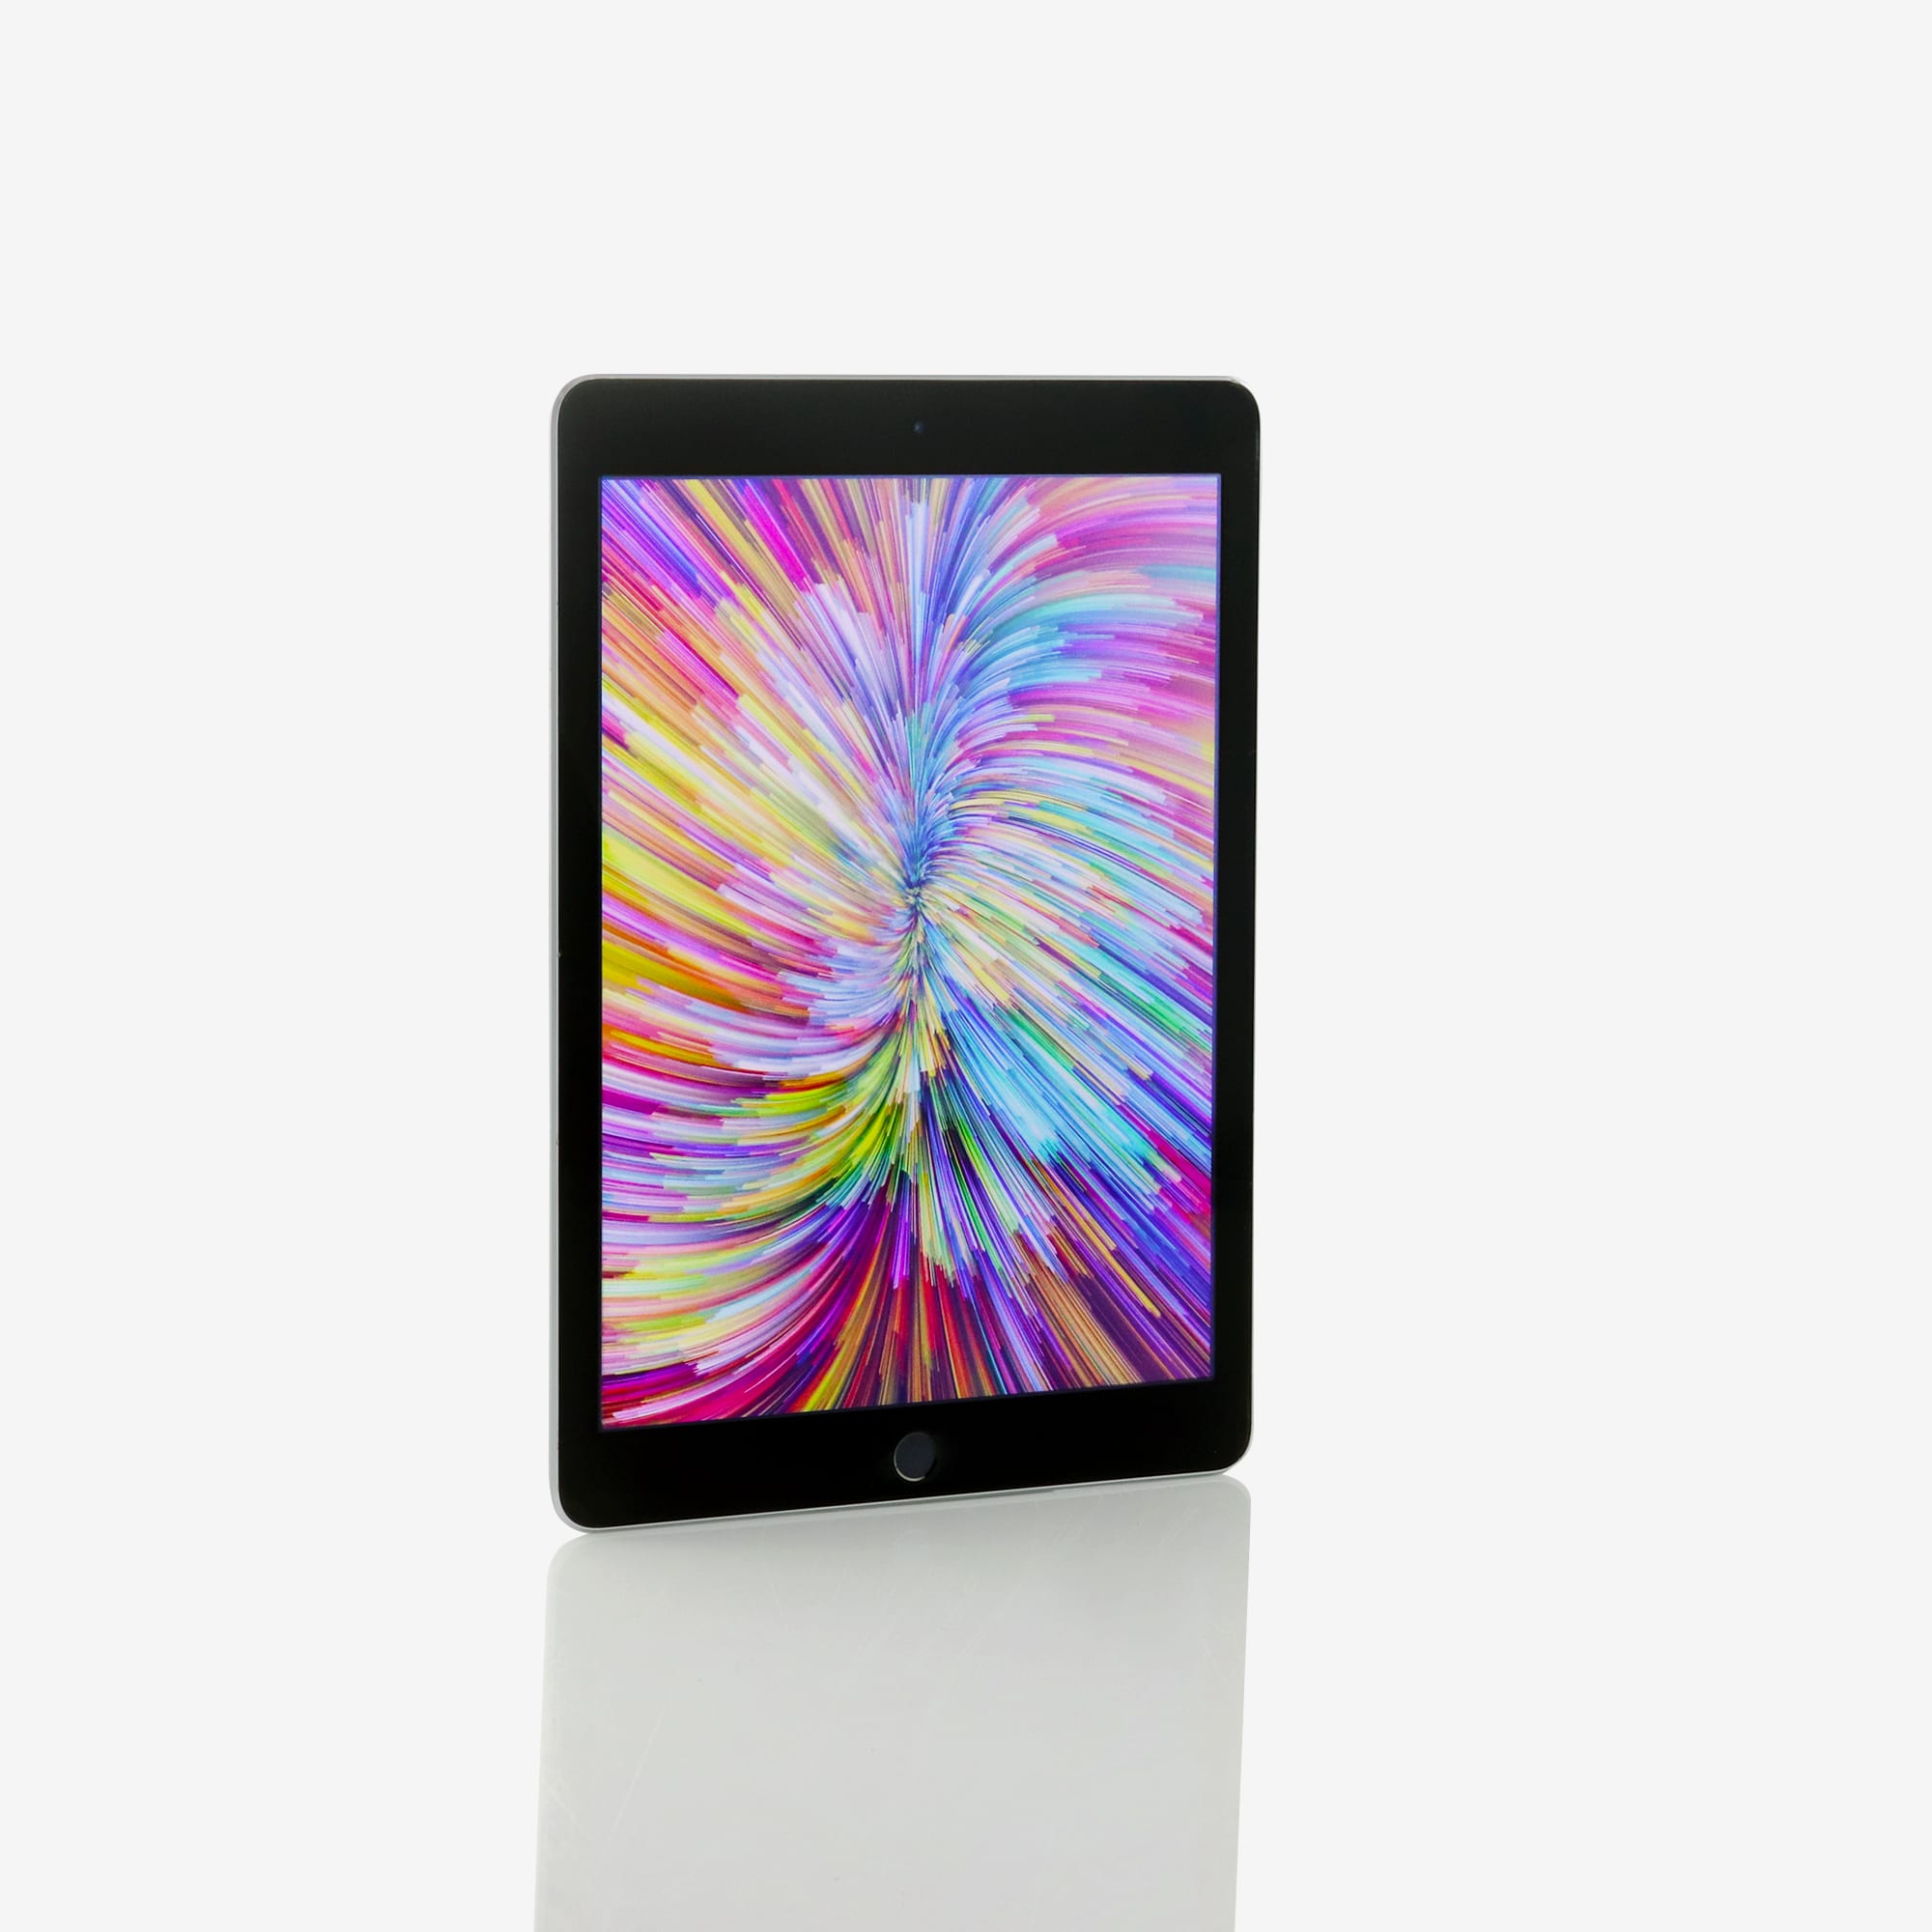 1 x iPad Air 2 (Wi-Fi) Space Grey (2014)